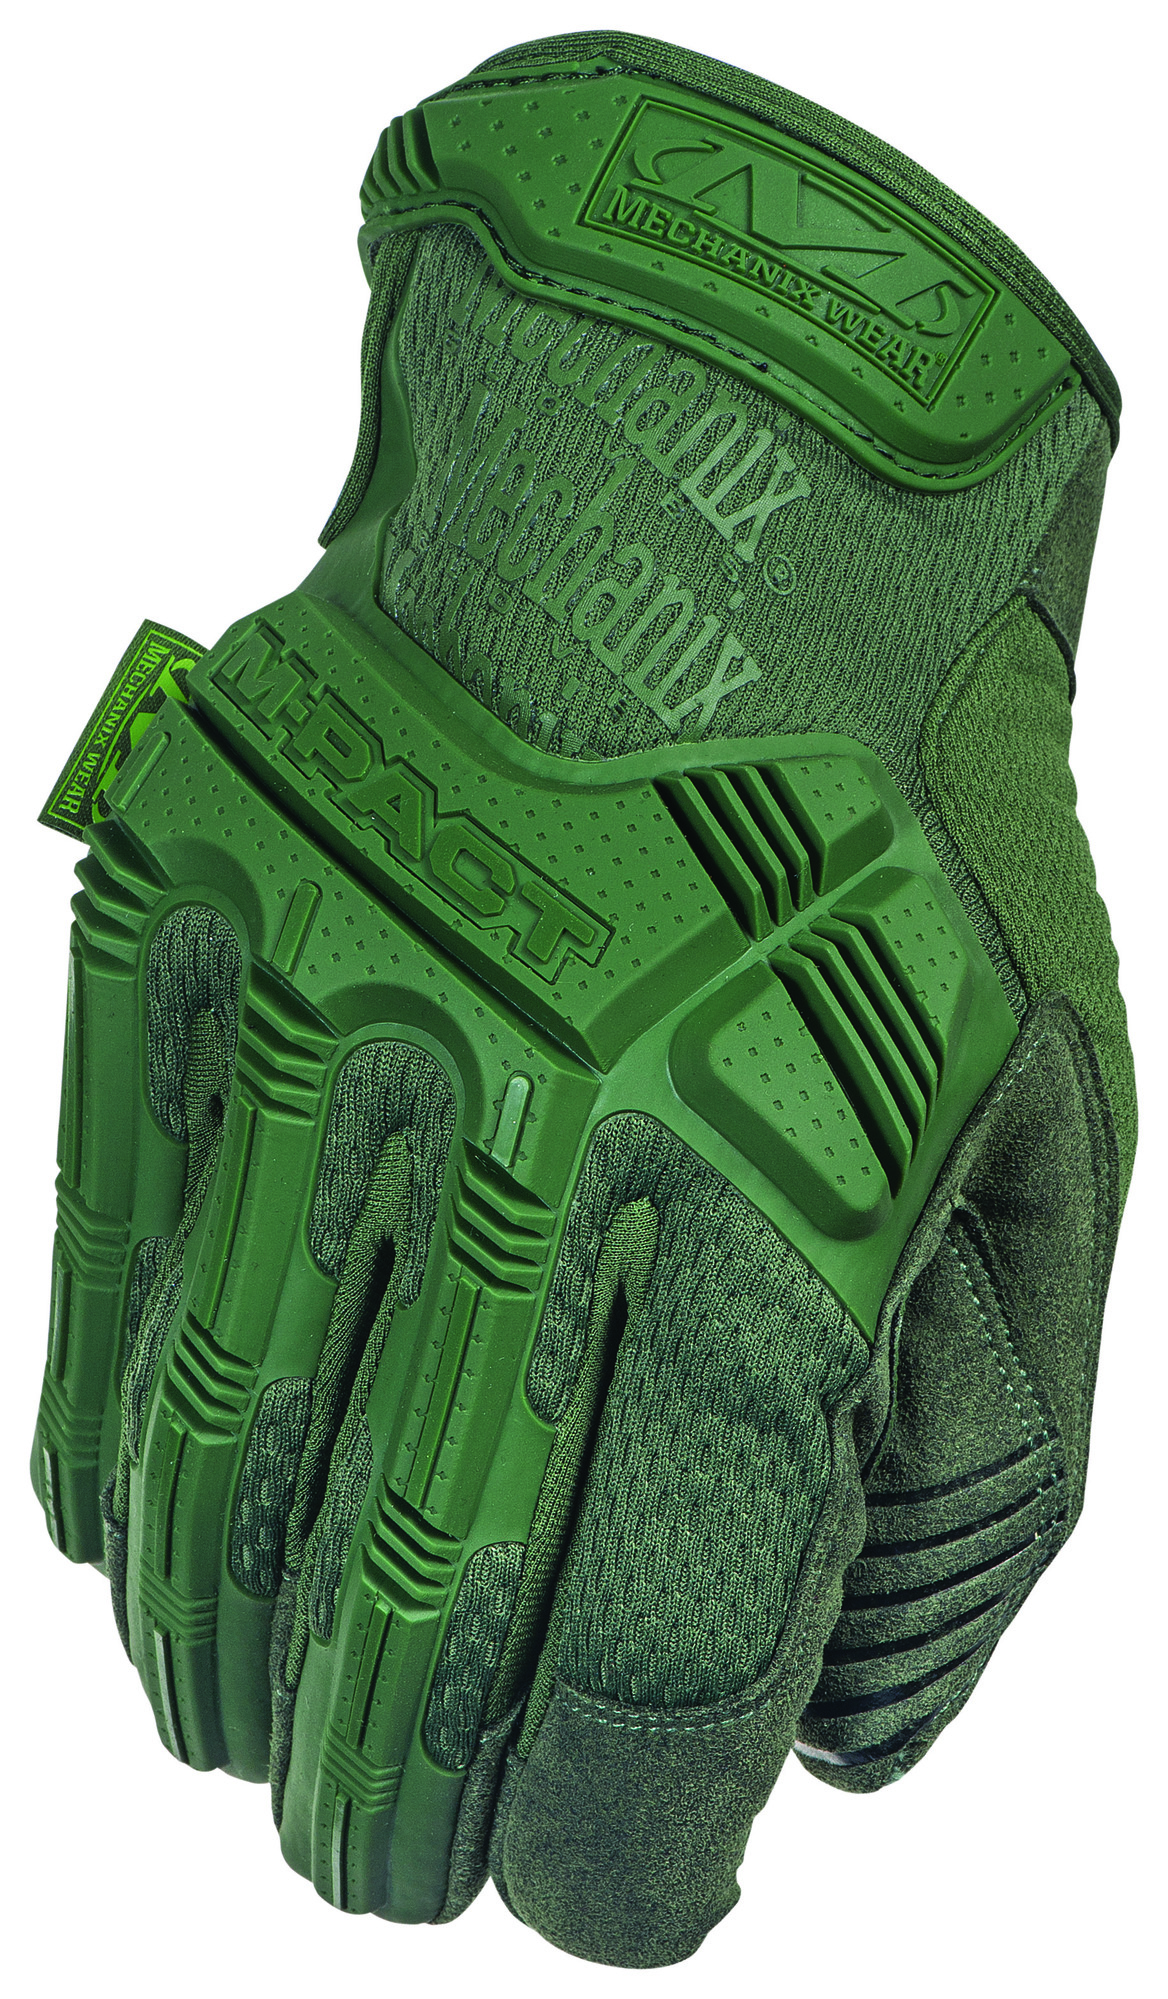 MECHANIX rukavice M-Pact - olivovo zelená L/10